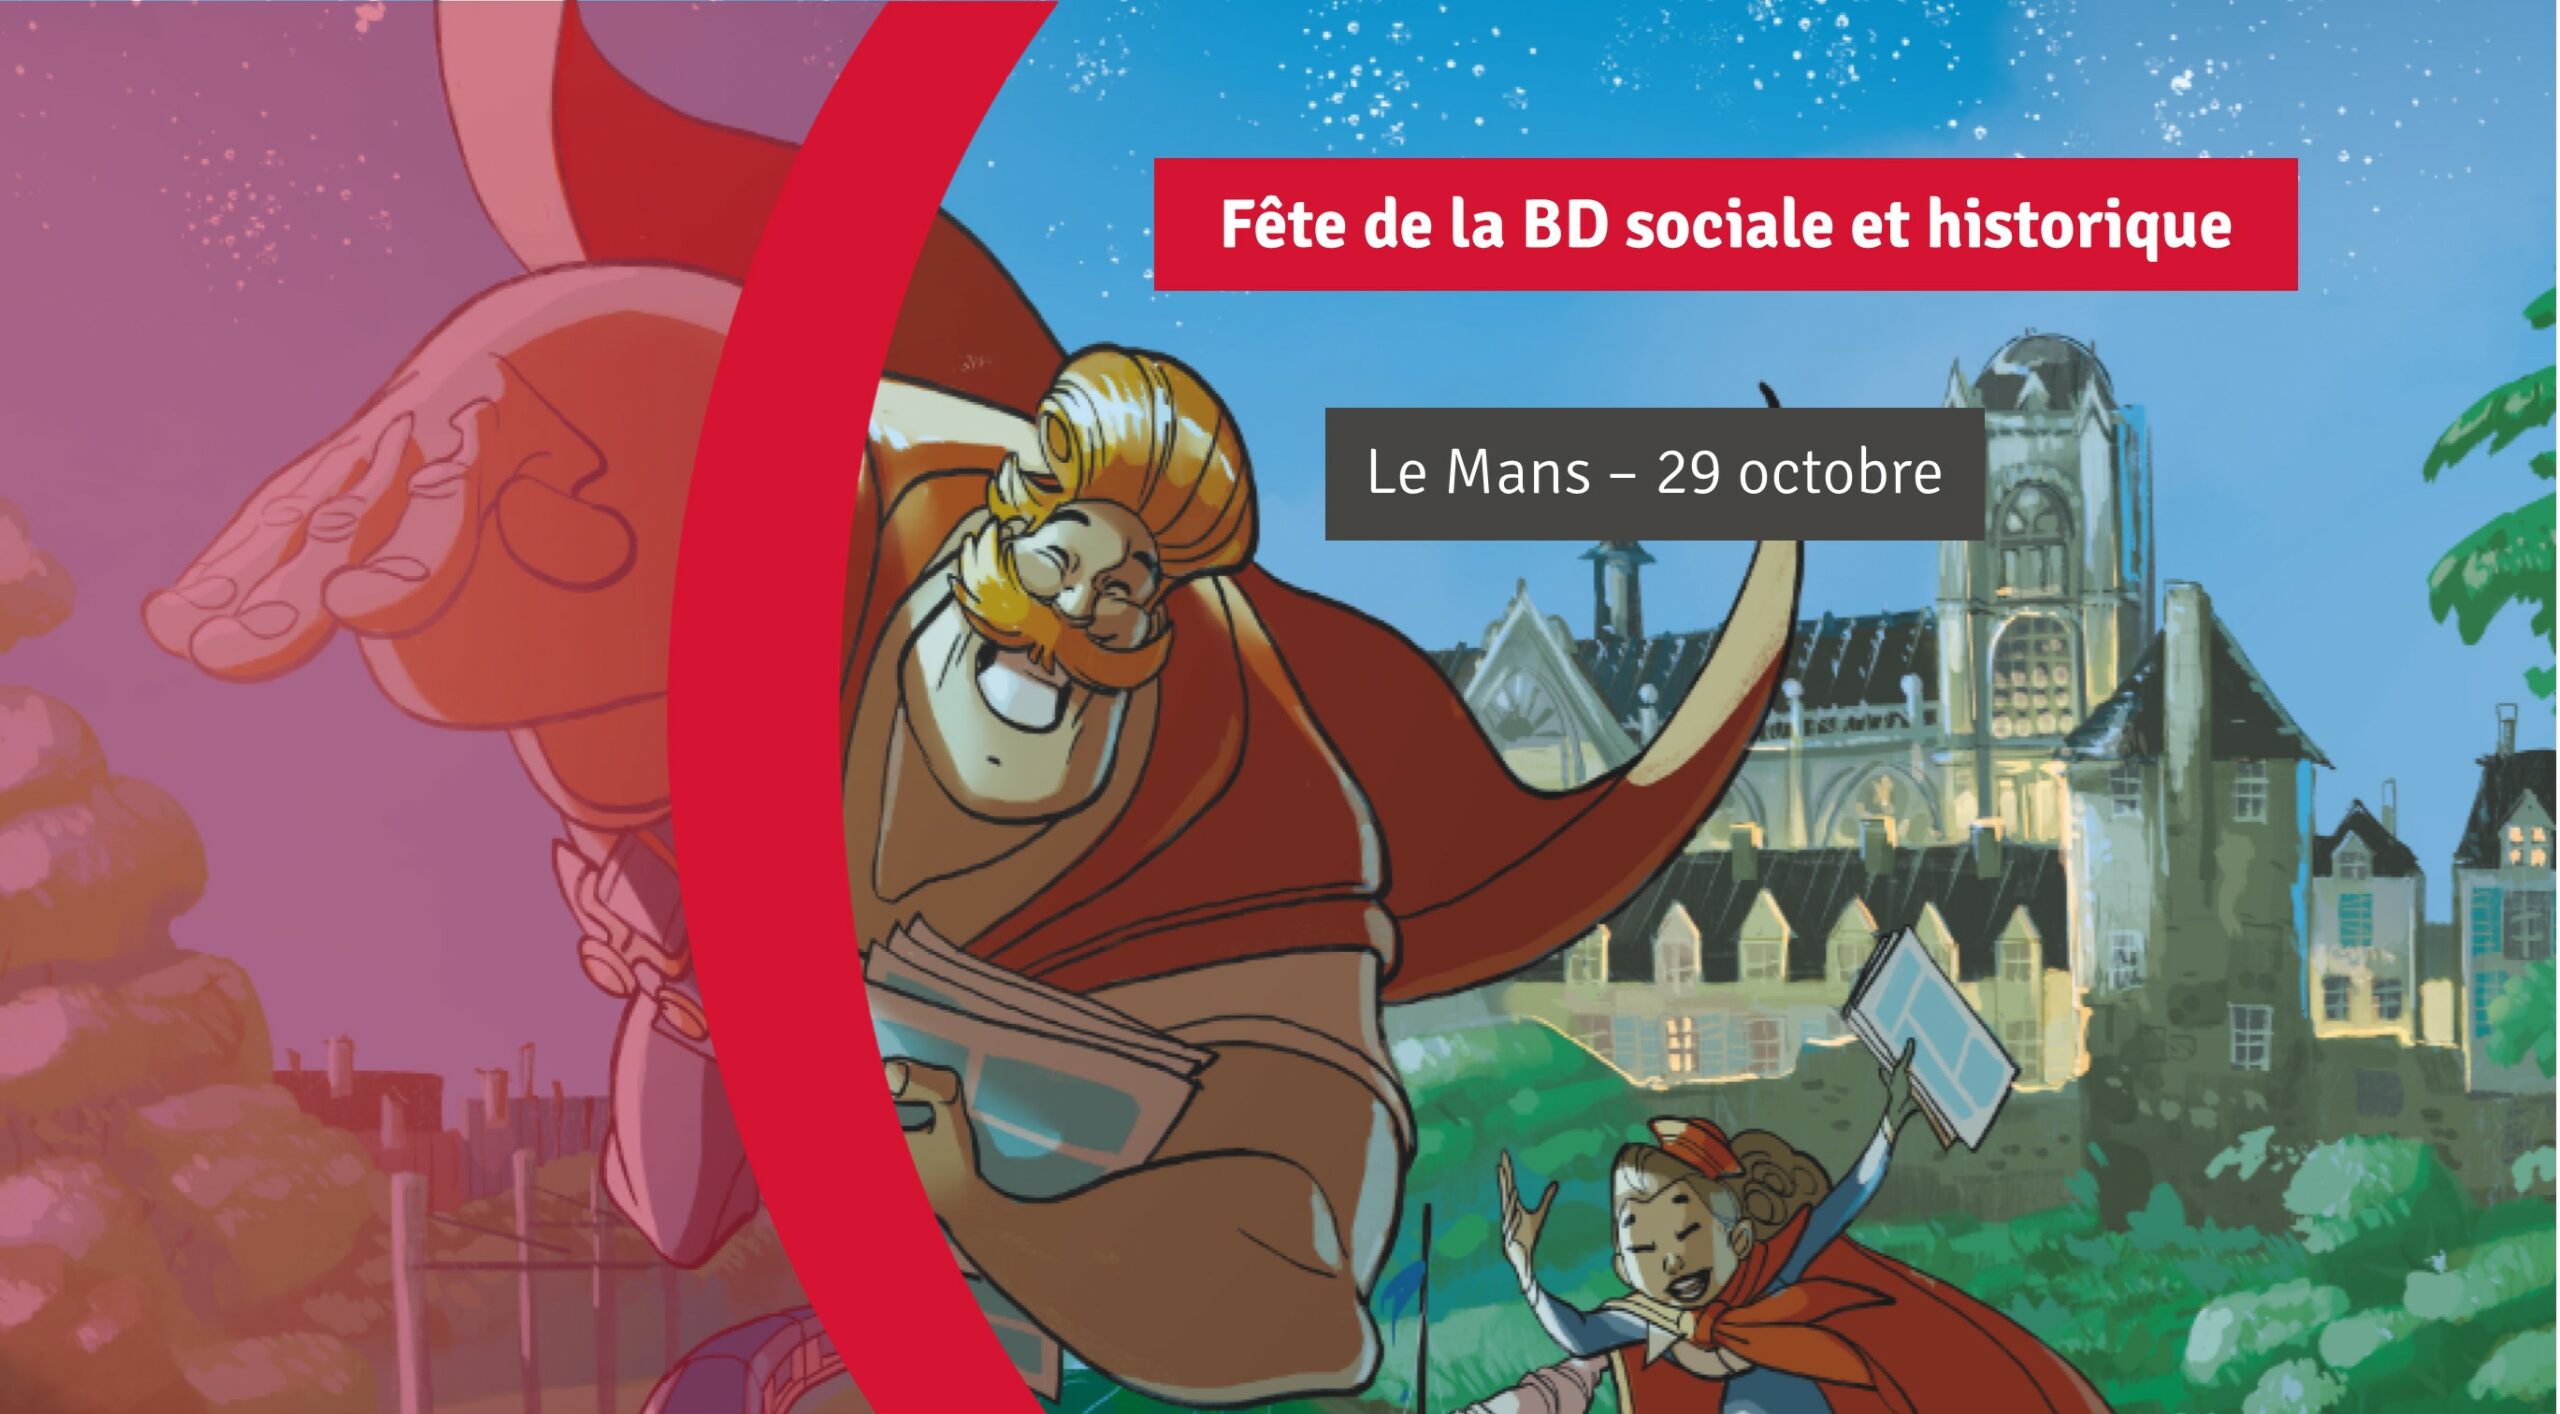 You are currently viewing Rendez-vous fin octobre pour la Fête de la BD